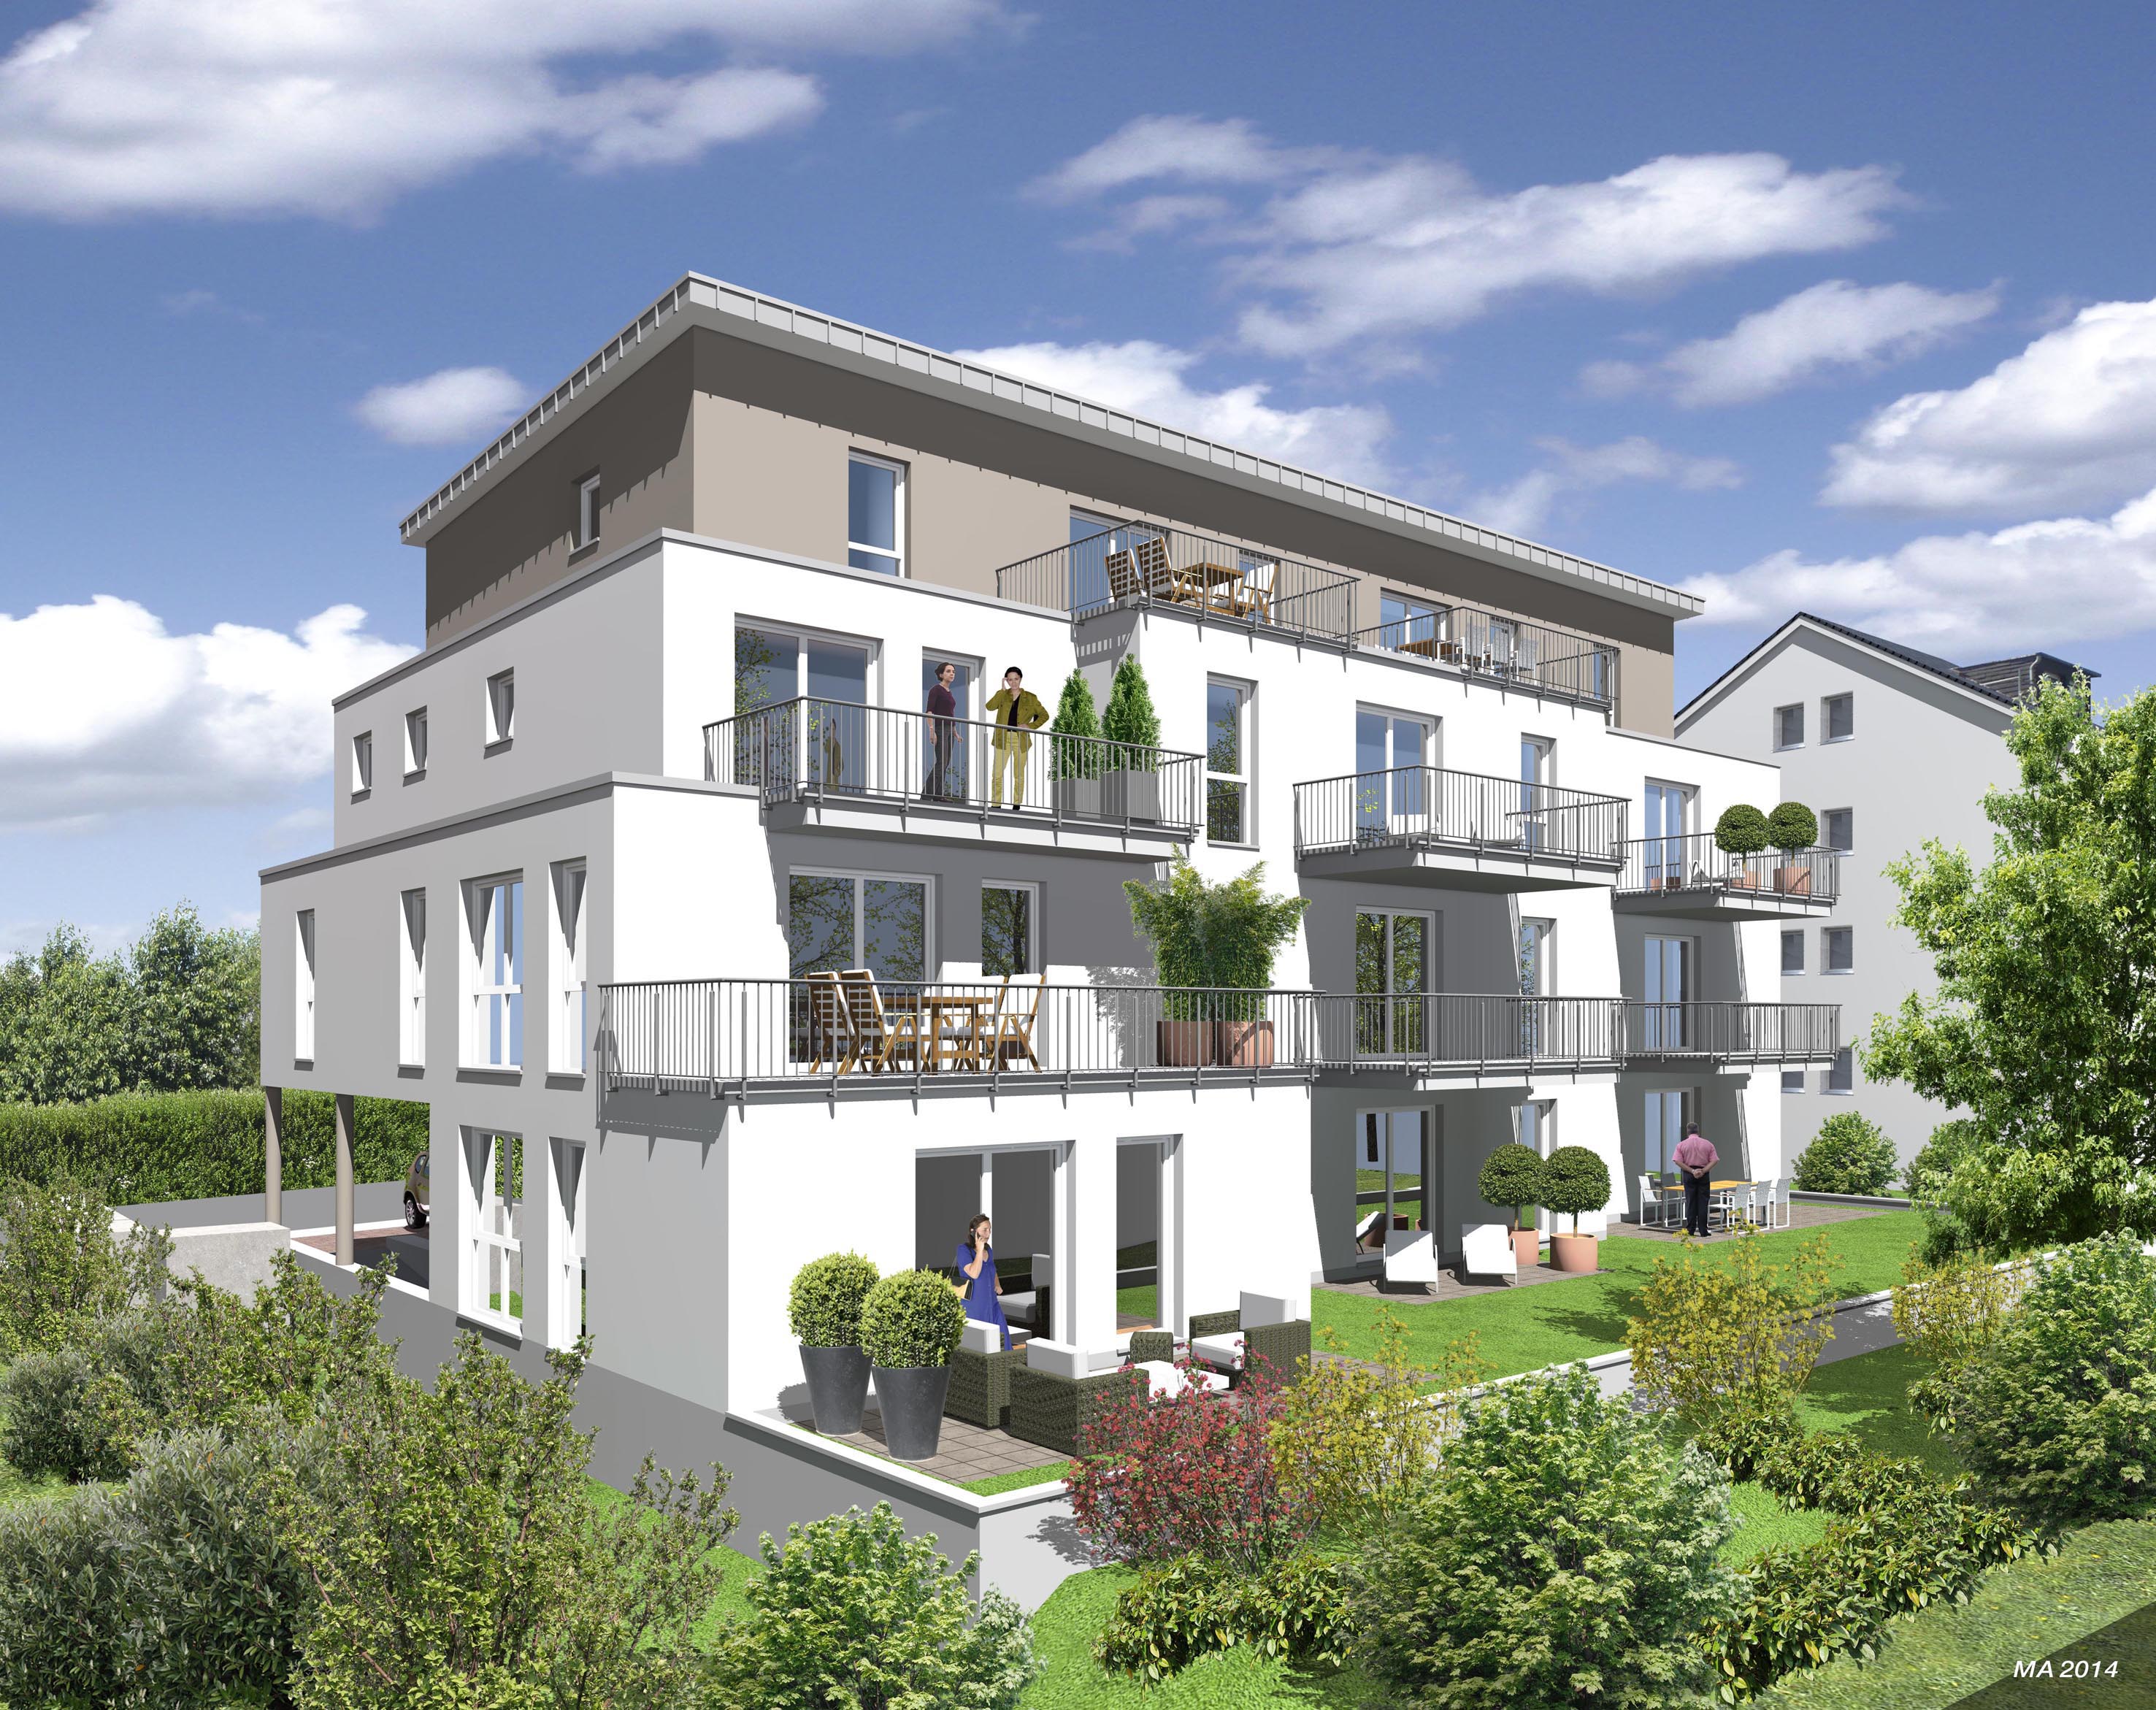 Architekturillustrationen des neuen Mehrfamilienhauses in Bensberg – Garten-Ansicht